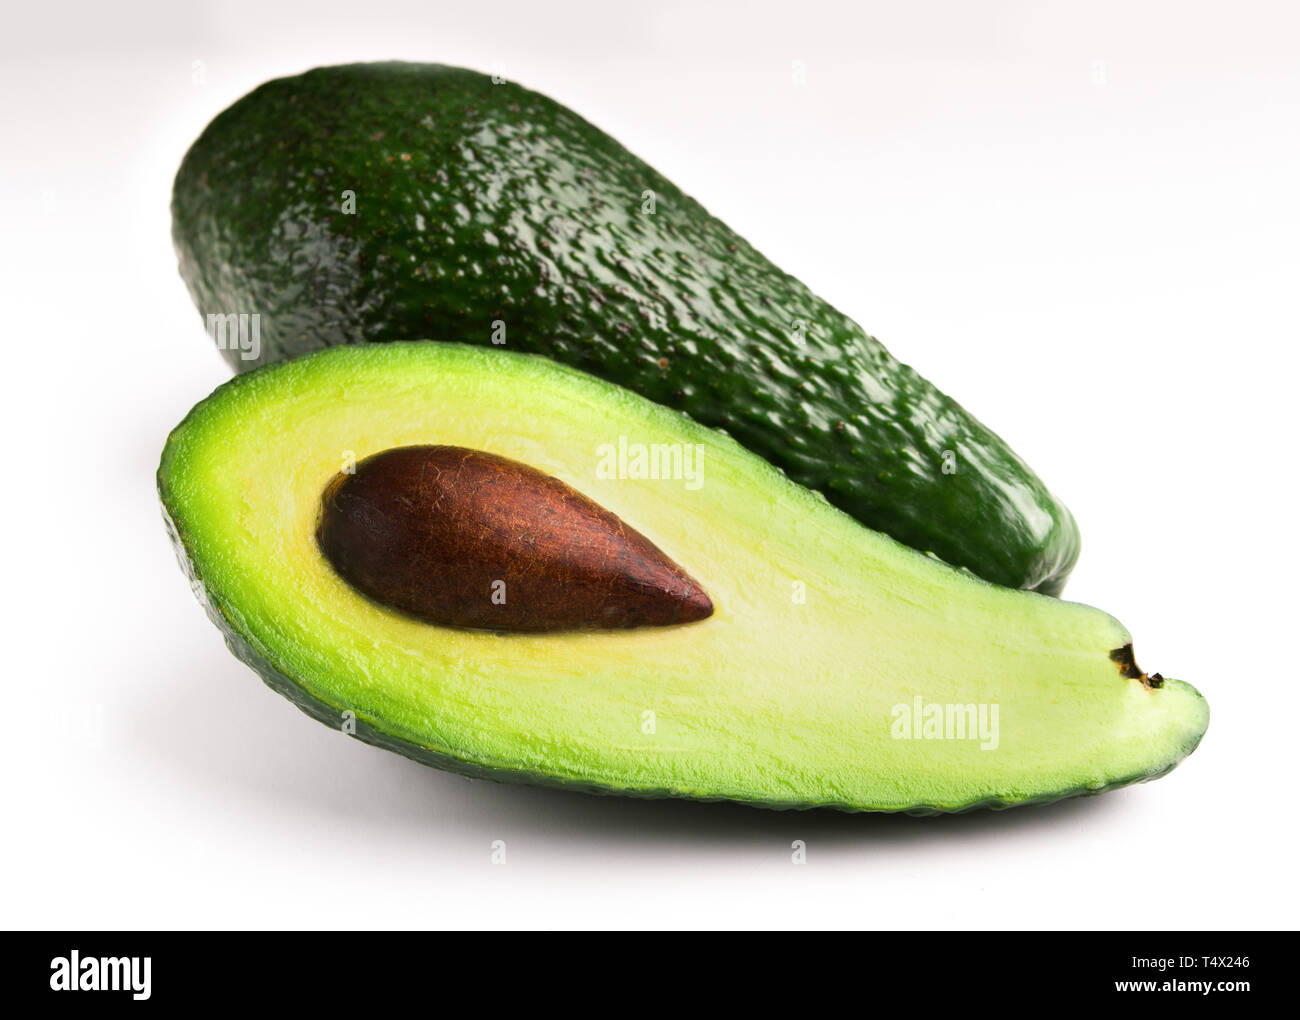 Avocado on white background Stock Photo